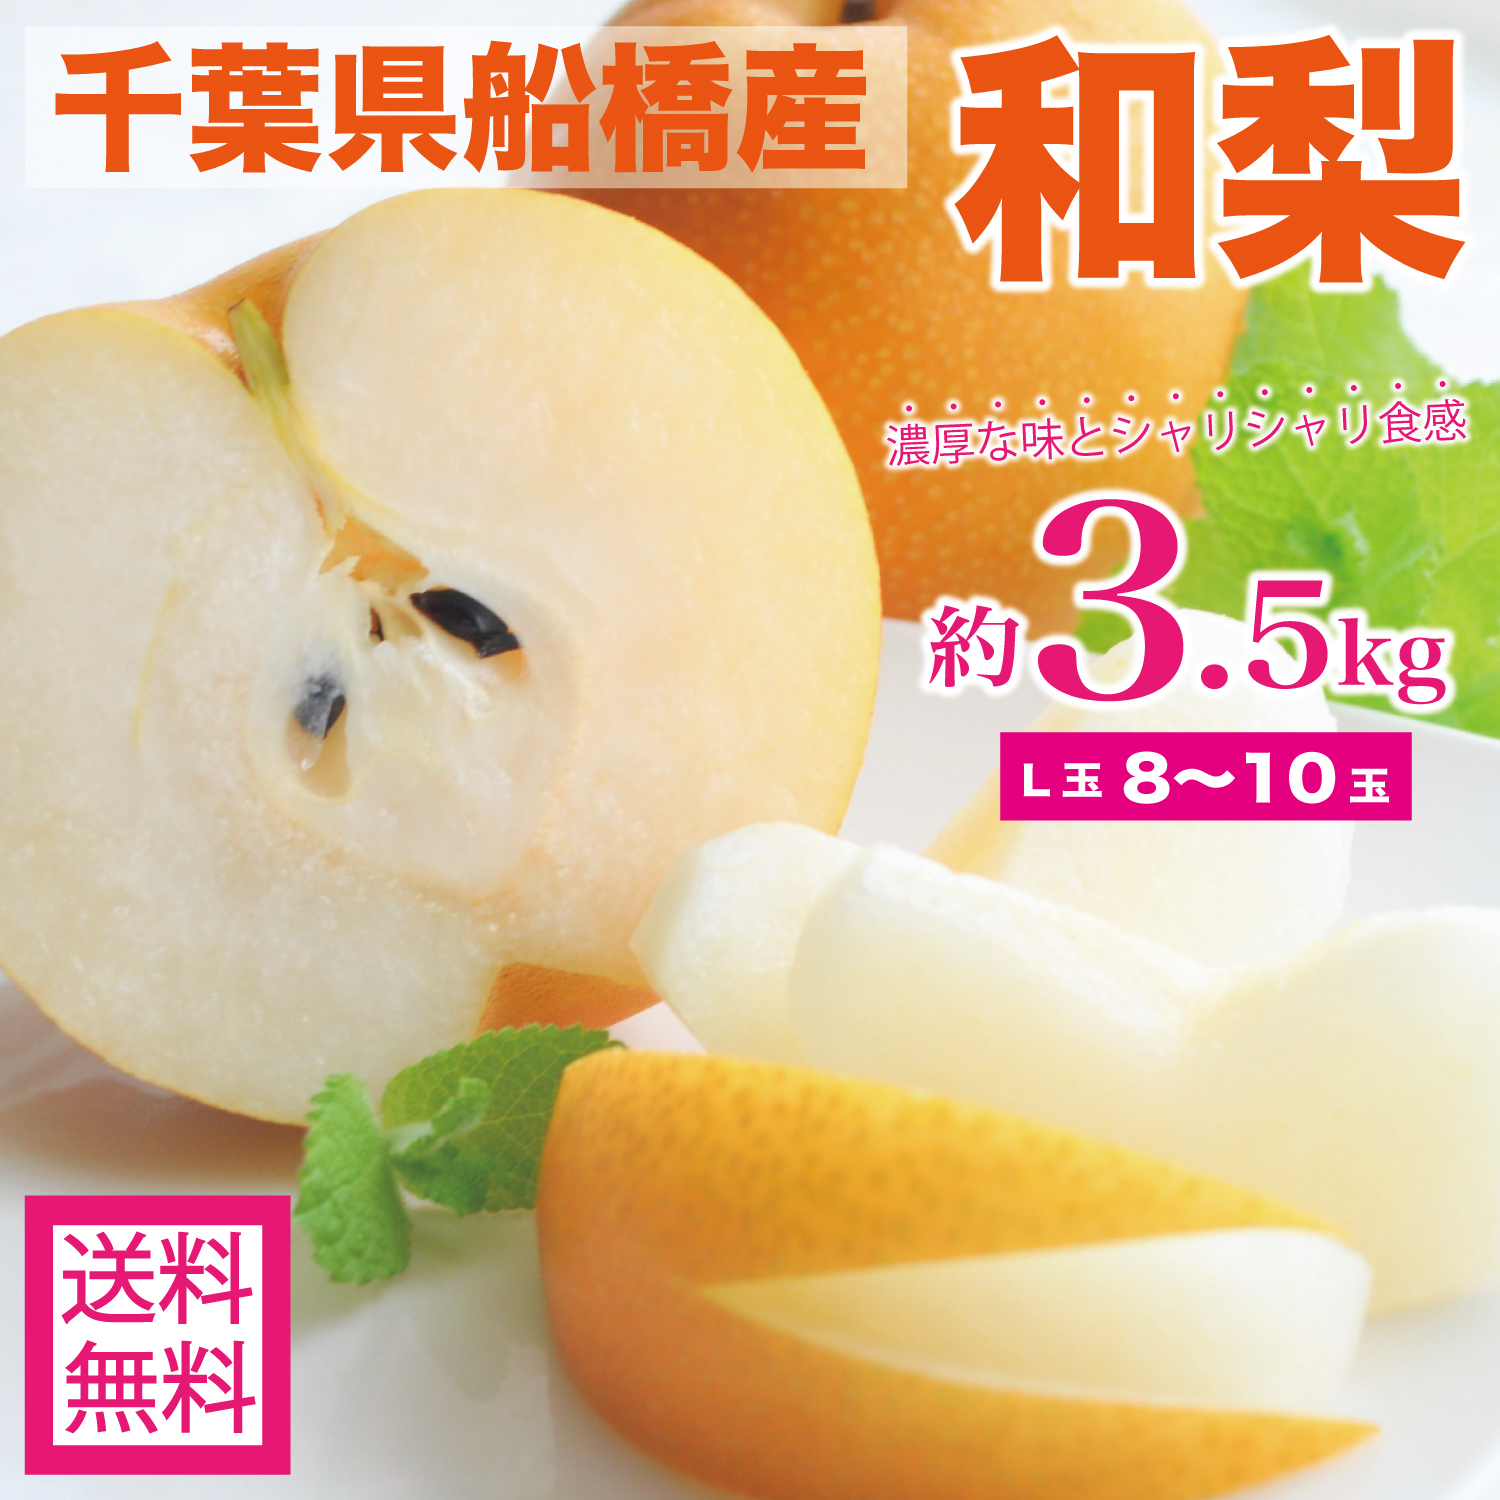 最上の品質な 梨 ２キロ前後 4〜10玉 熊本産 旬の品種をお届けいたします 夏季はクール便使用